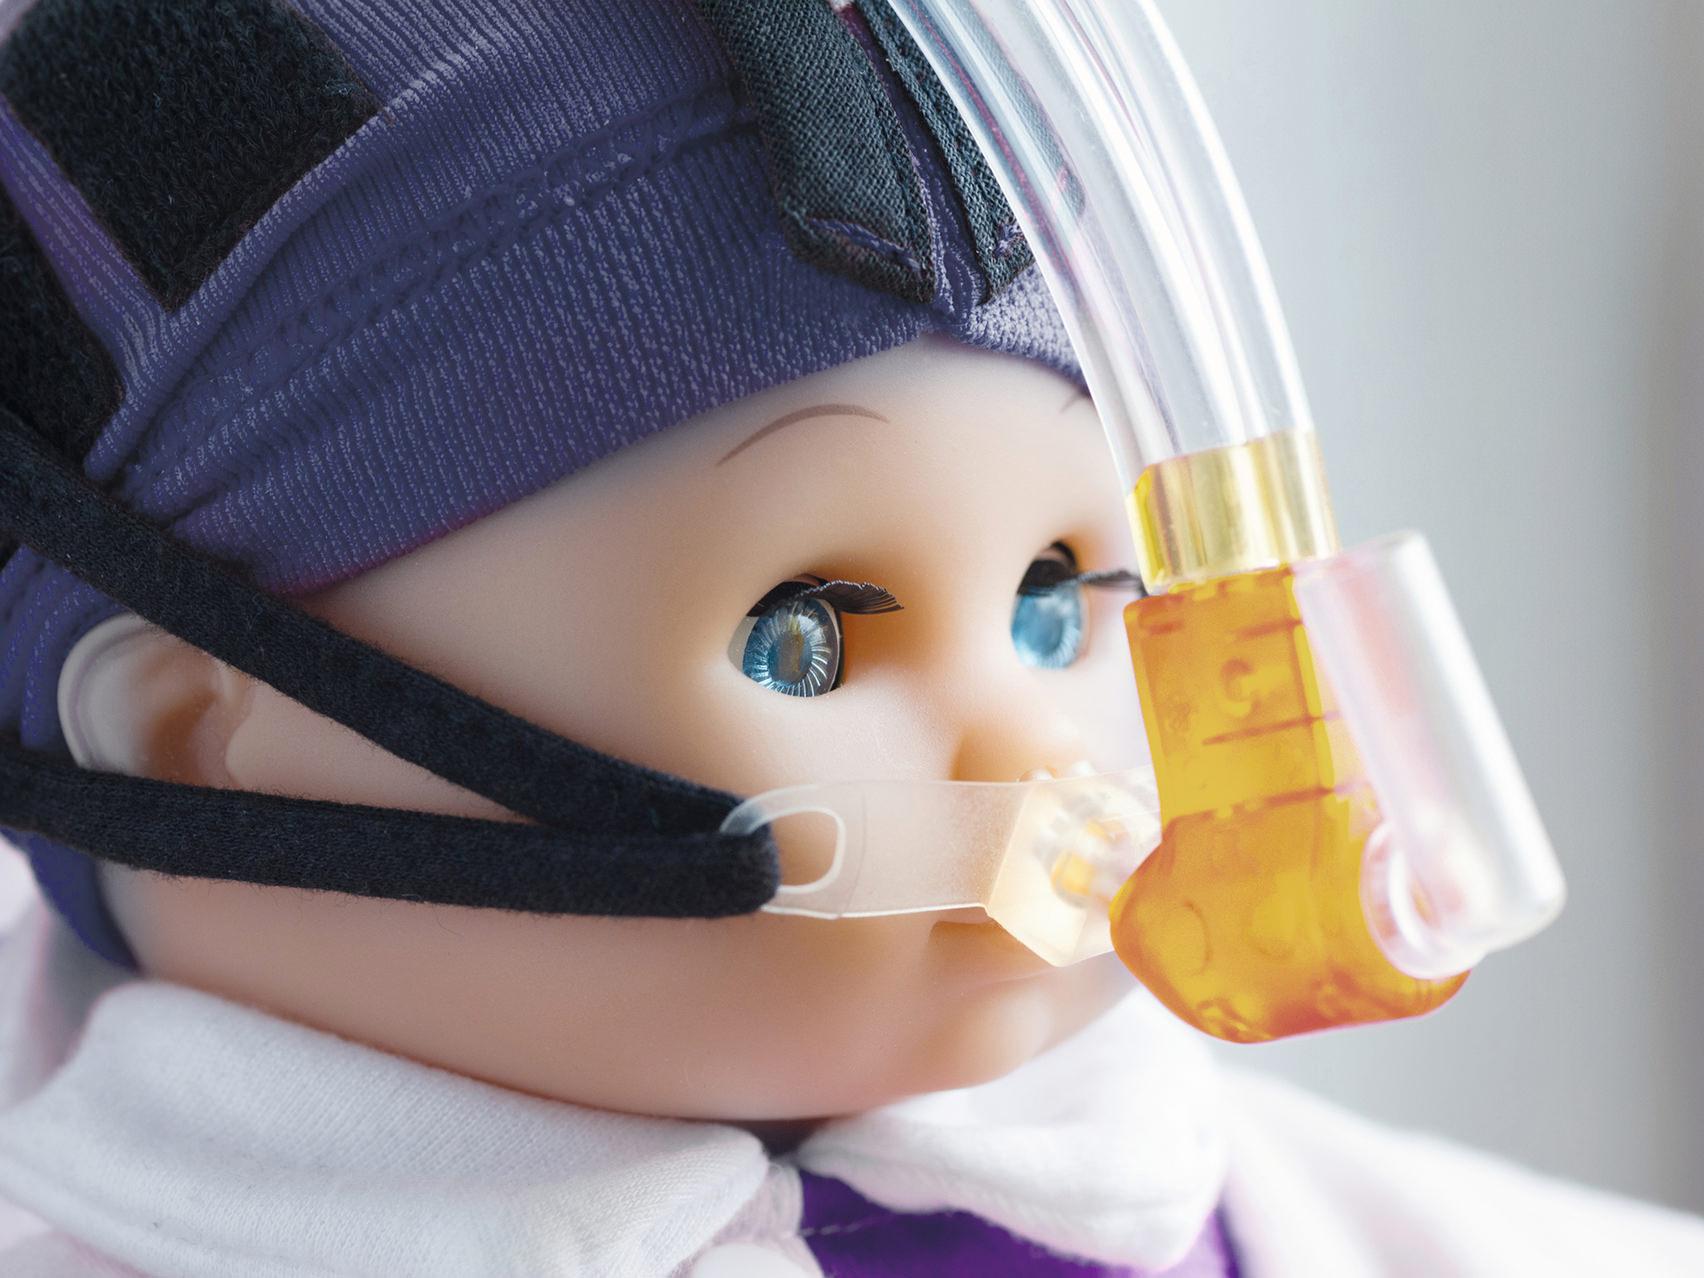 Vista ampliada do rosto de uma boneca usando uma máscara respiratória.